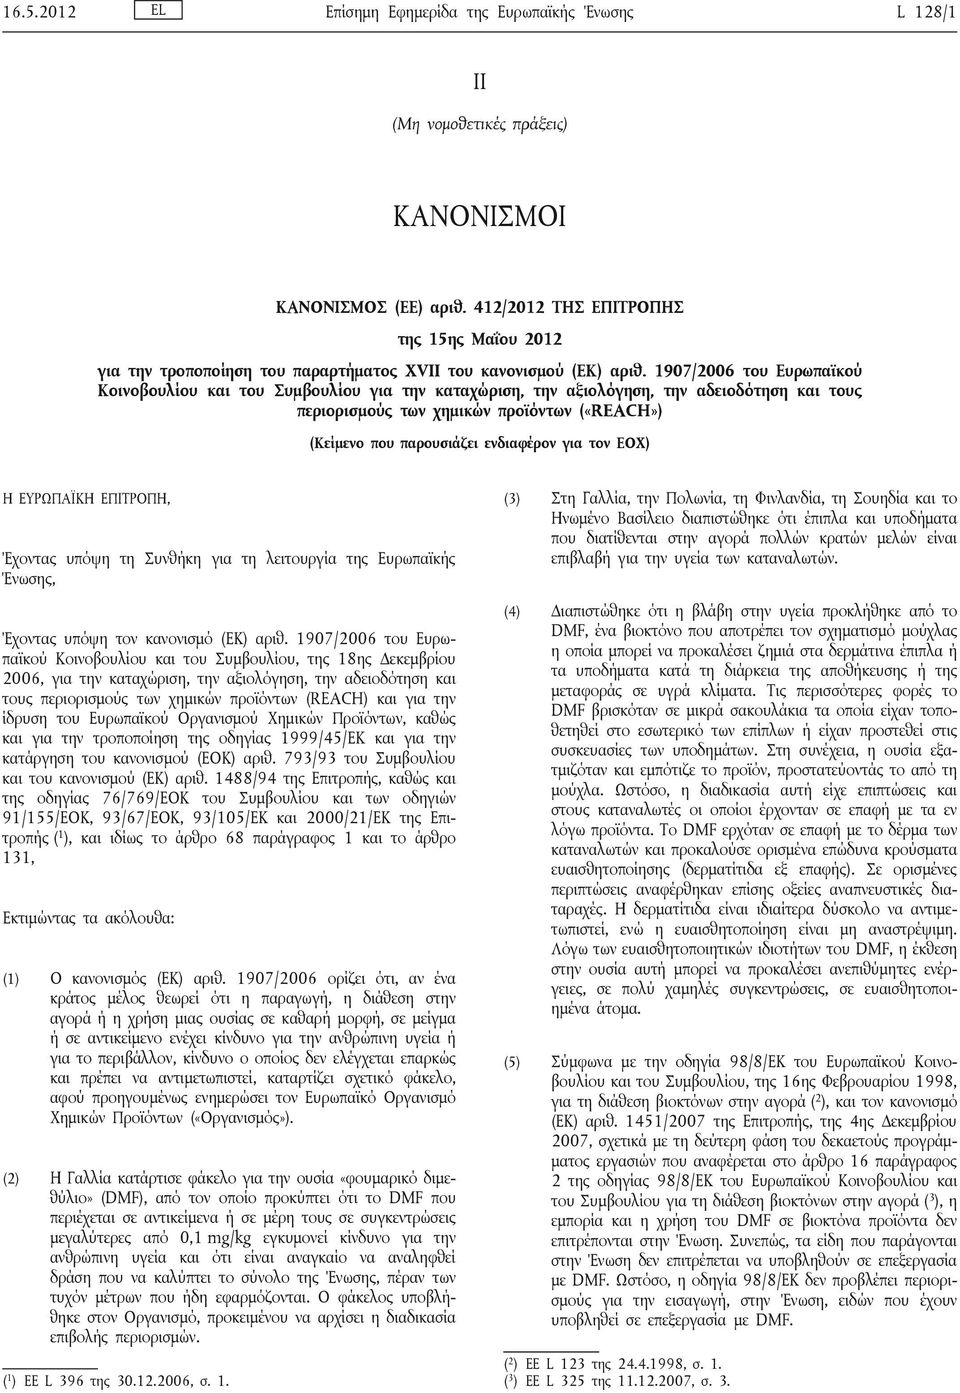 1907/2006 του Ευρωπαϊκού Κοινοβουλίου και του Συμβουλίου για την καταχώριση, την αξιολόγηση, την αδειοδότηση και τους περιορισμούς των χημικών προϊόντων («REACH») (Κείμενο που παρουσιάζει ενδιαφέρον